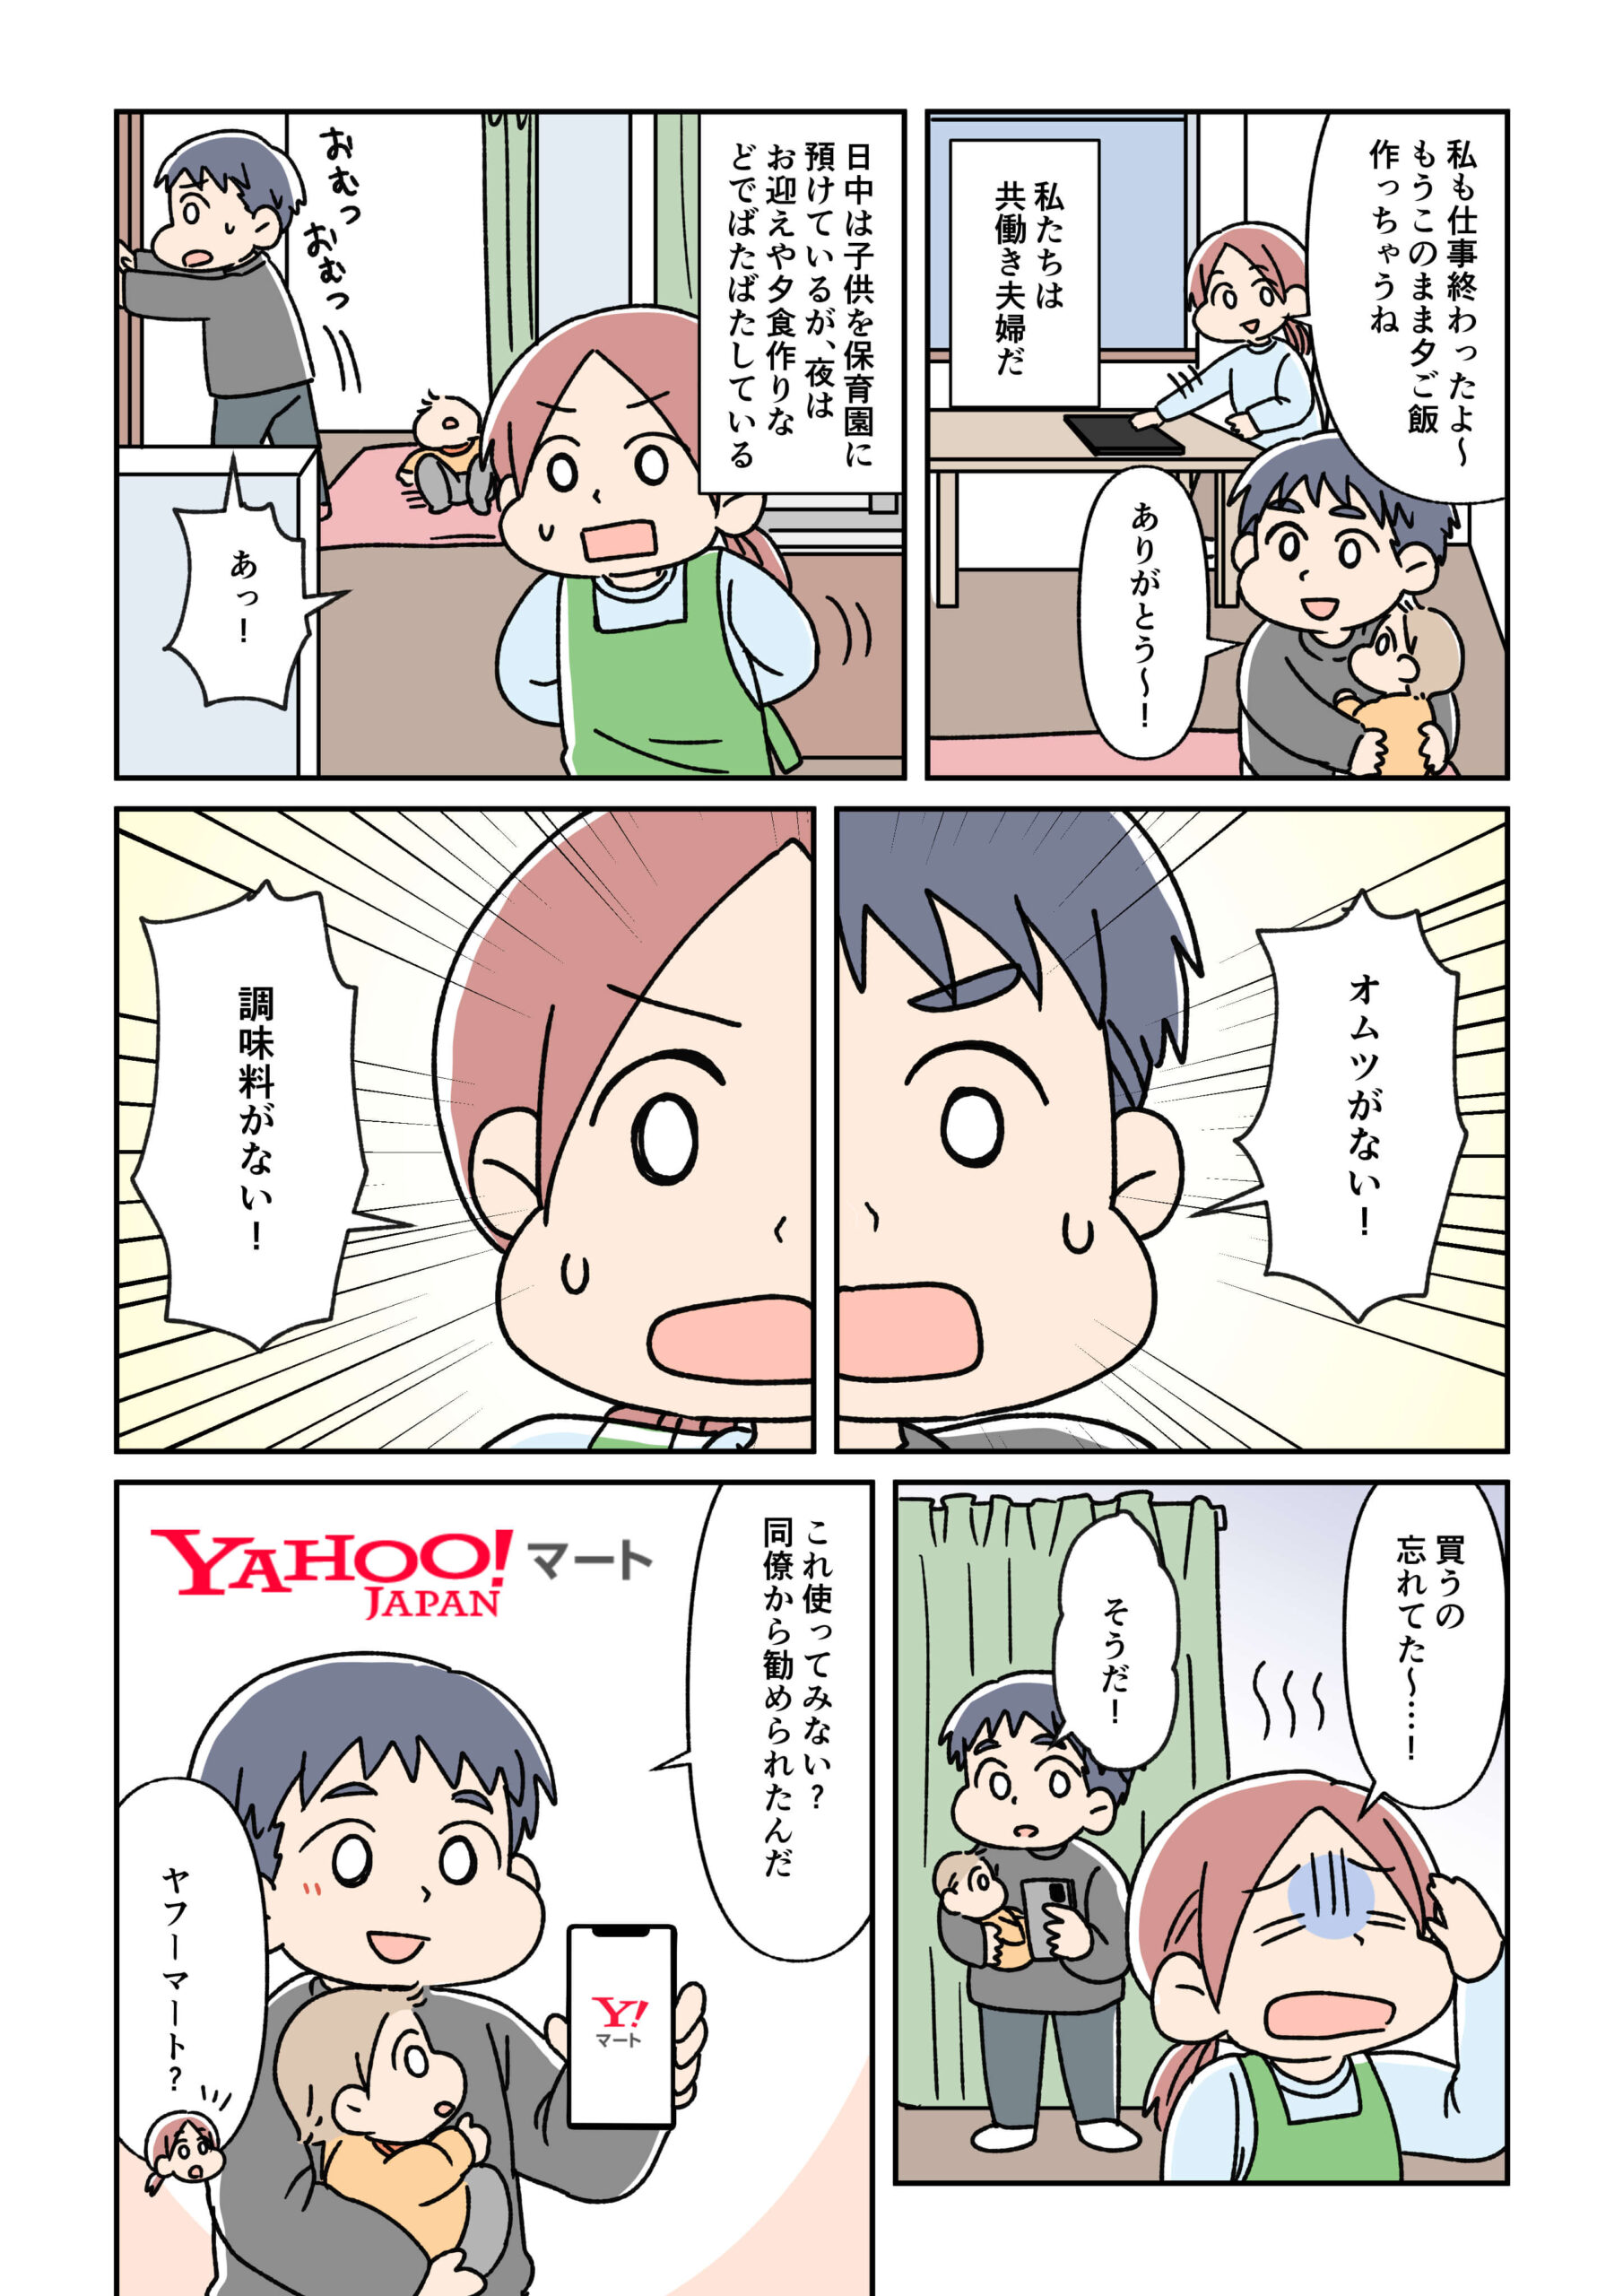 Yahoo! JAPAN公式SNSアカウント投稿用漫画　ヤフーマート